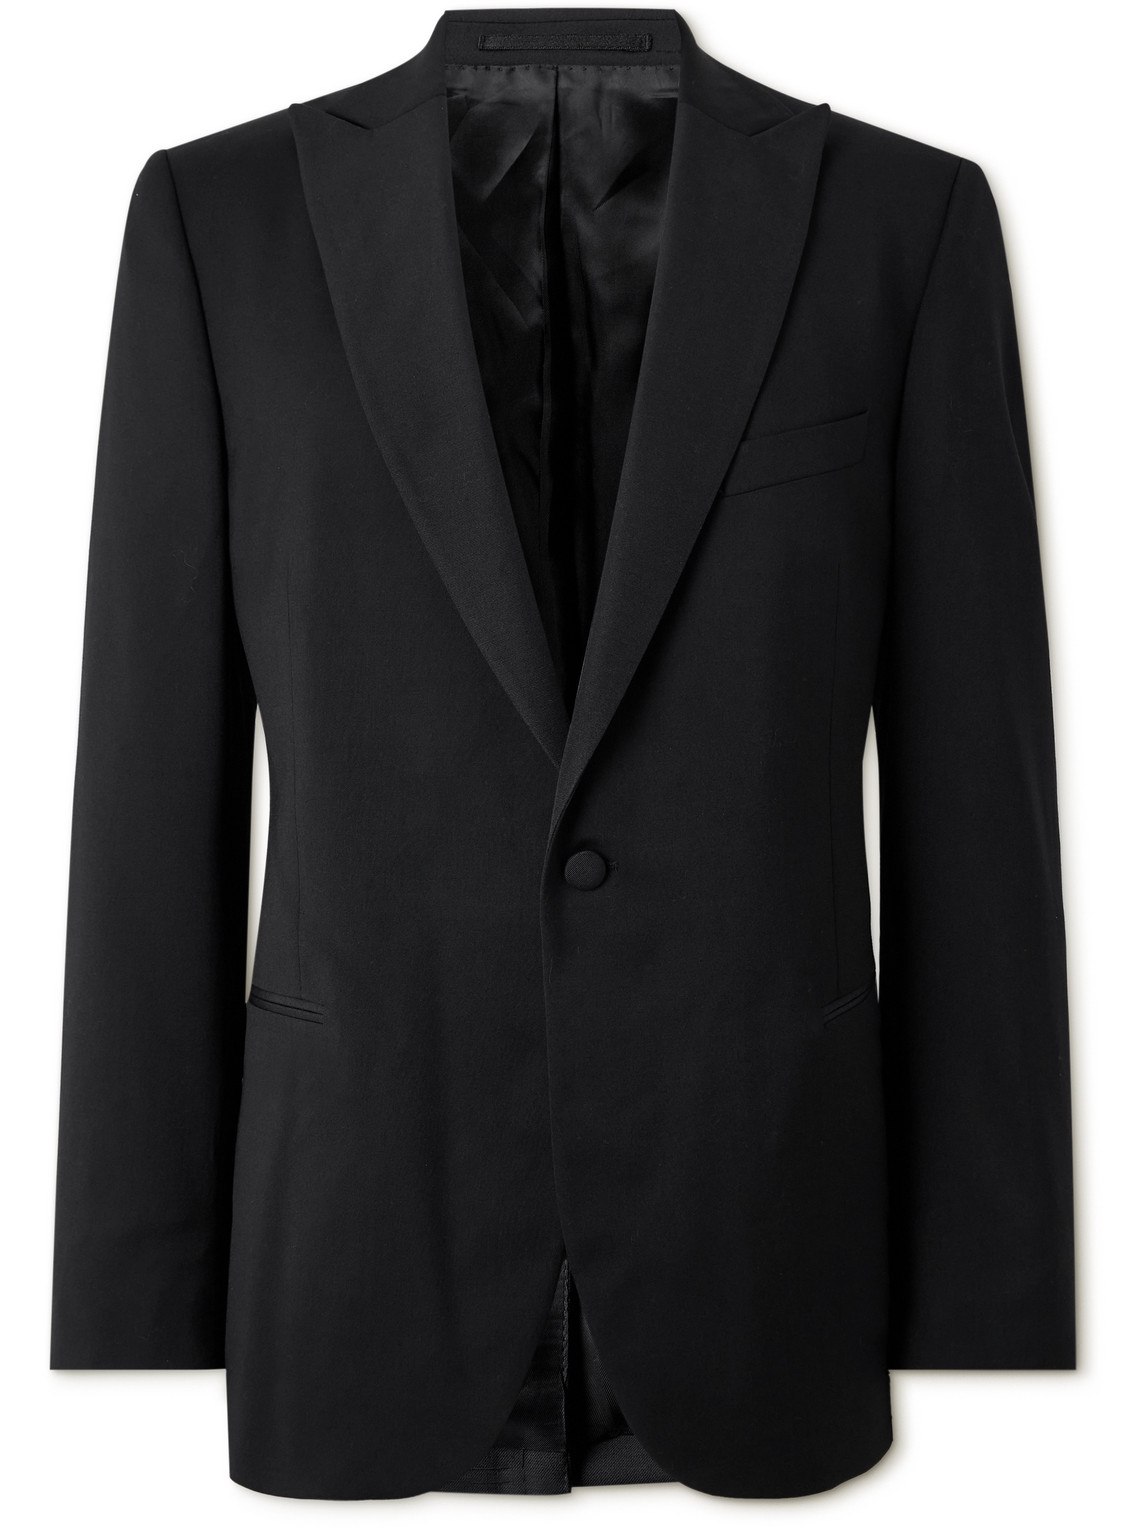 Mr P Wool Tuxedo Jacket In Black